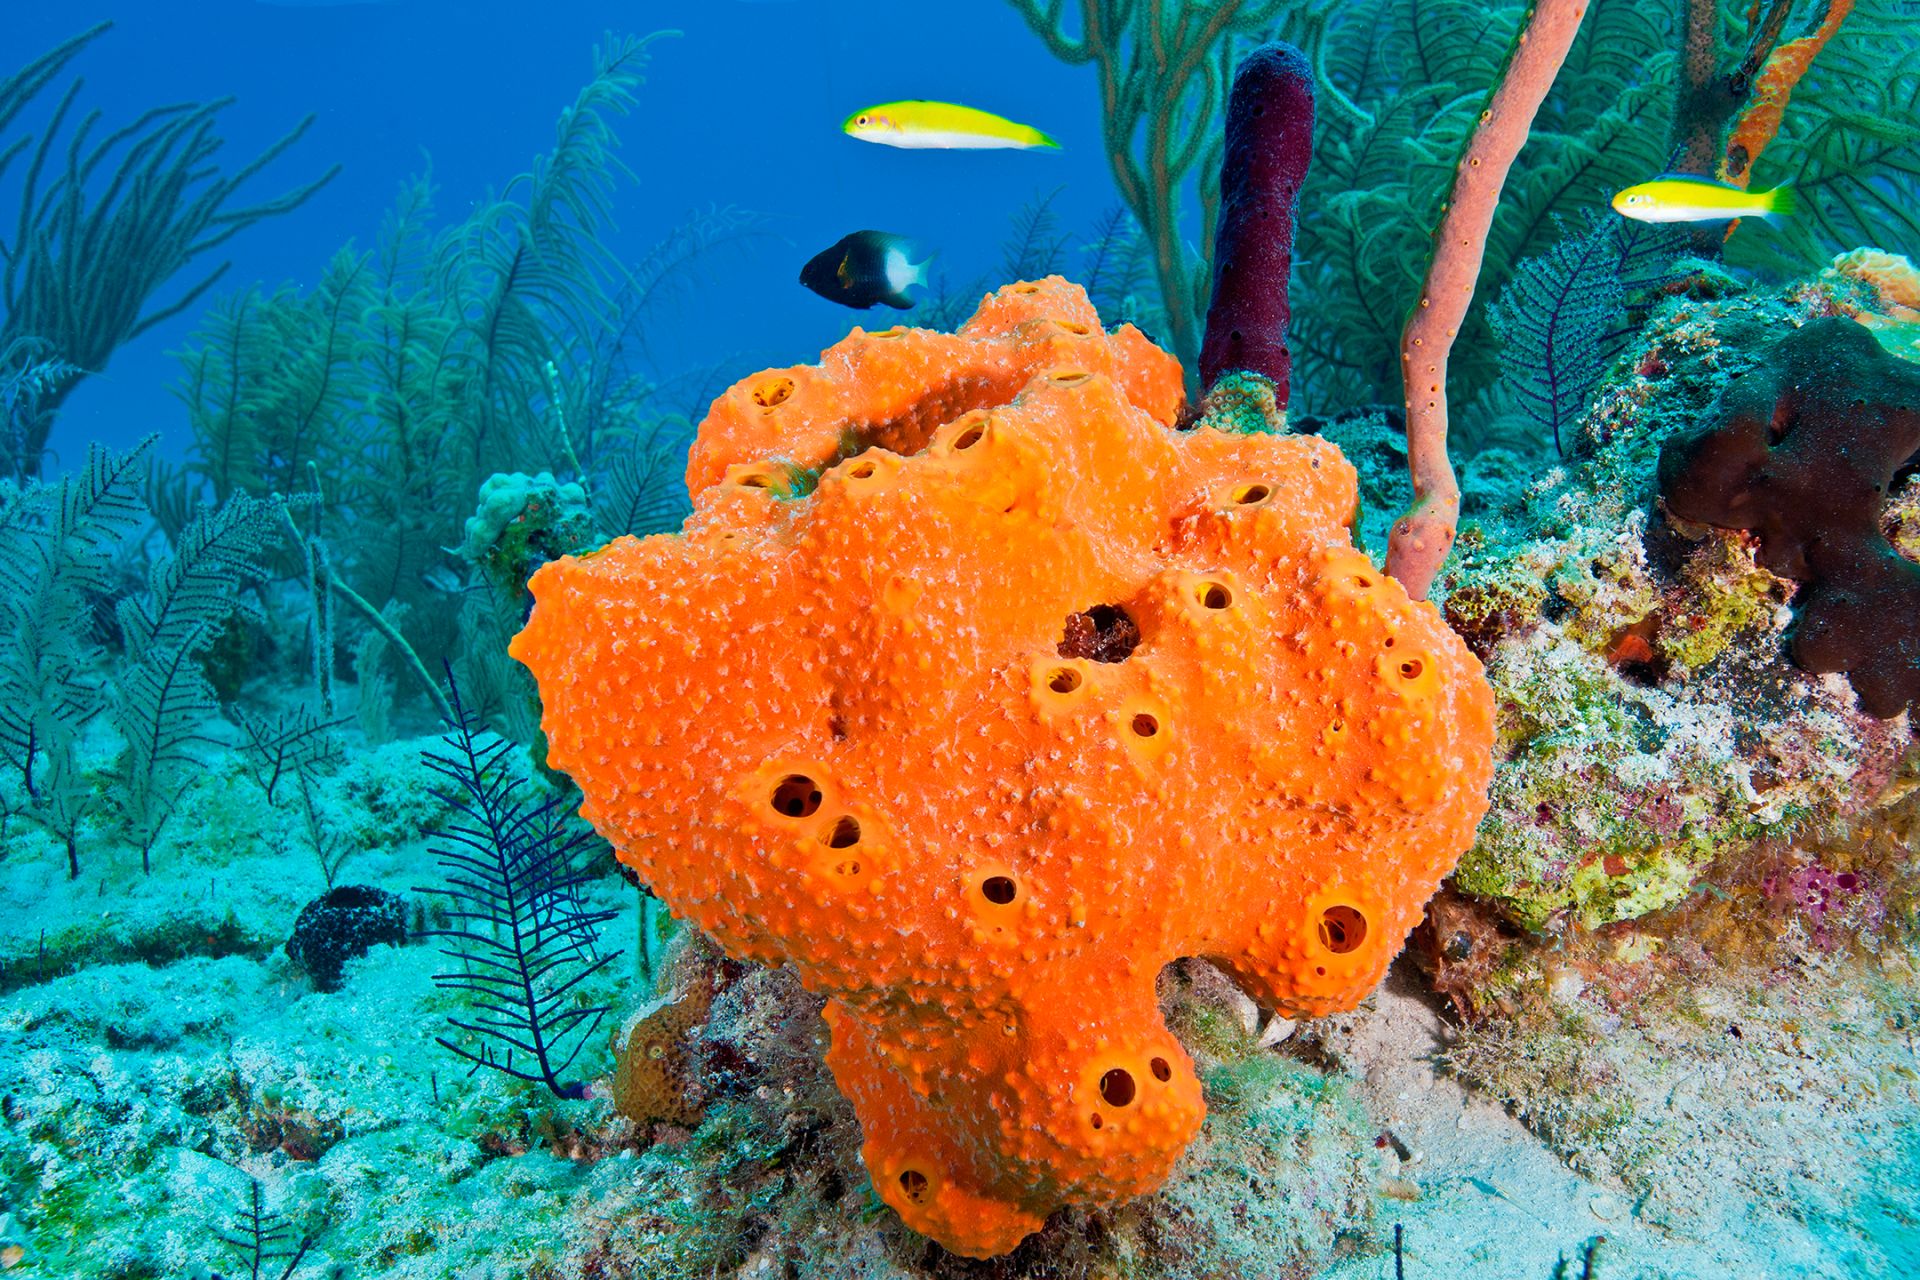 Is a sea sponge a vertebrate or invertebrate?